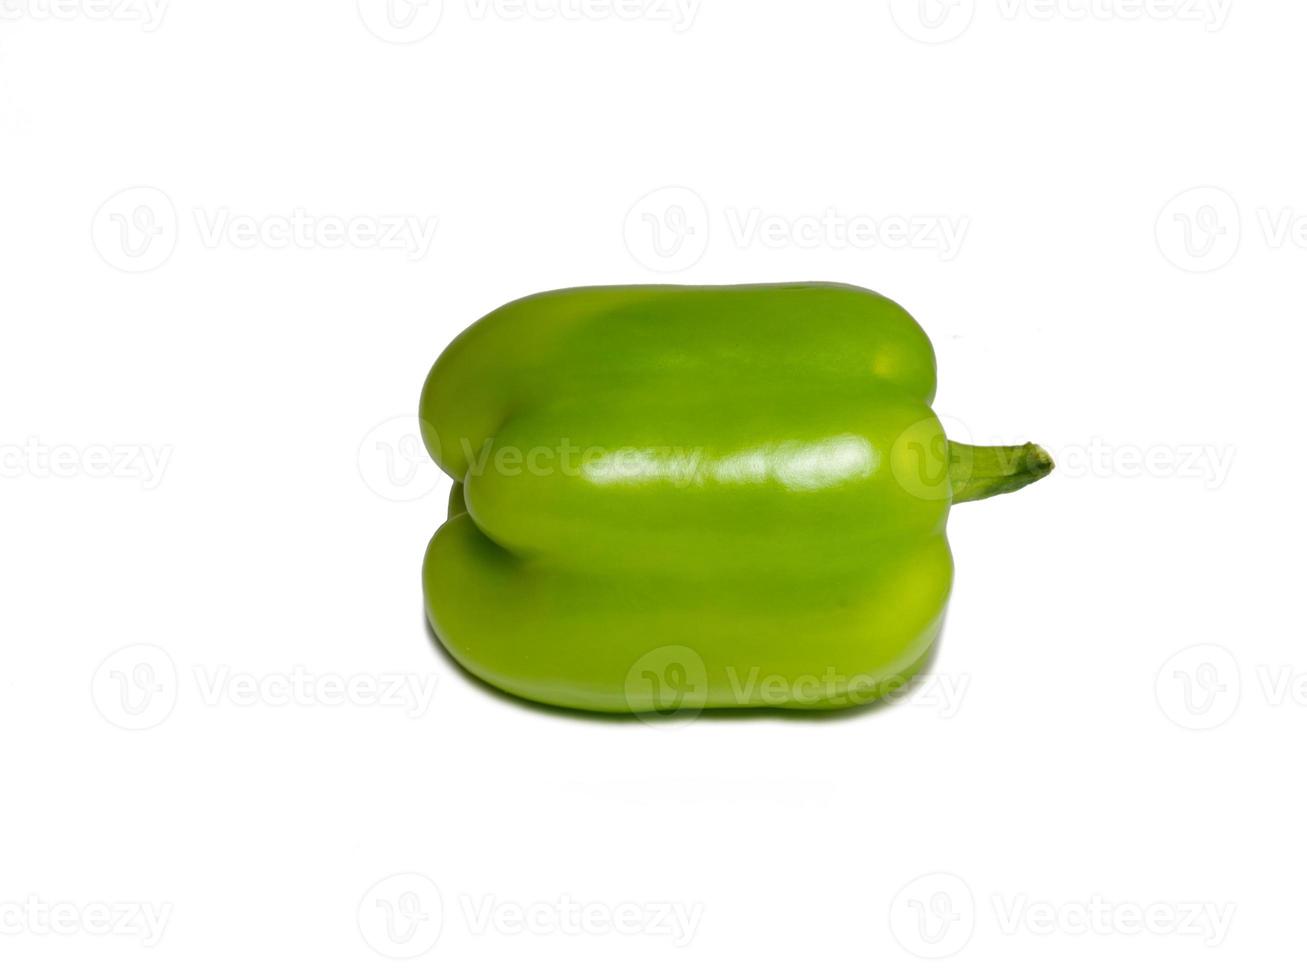 pepe dolma su sfondo bianco. una bella verdura succosa. peperone dolce verde. foto